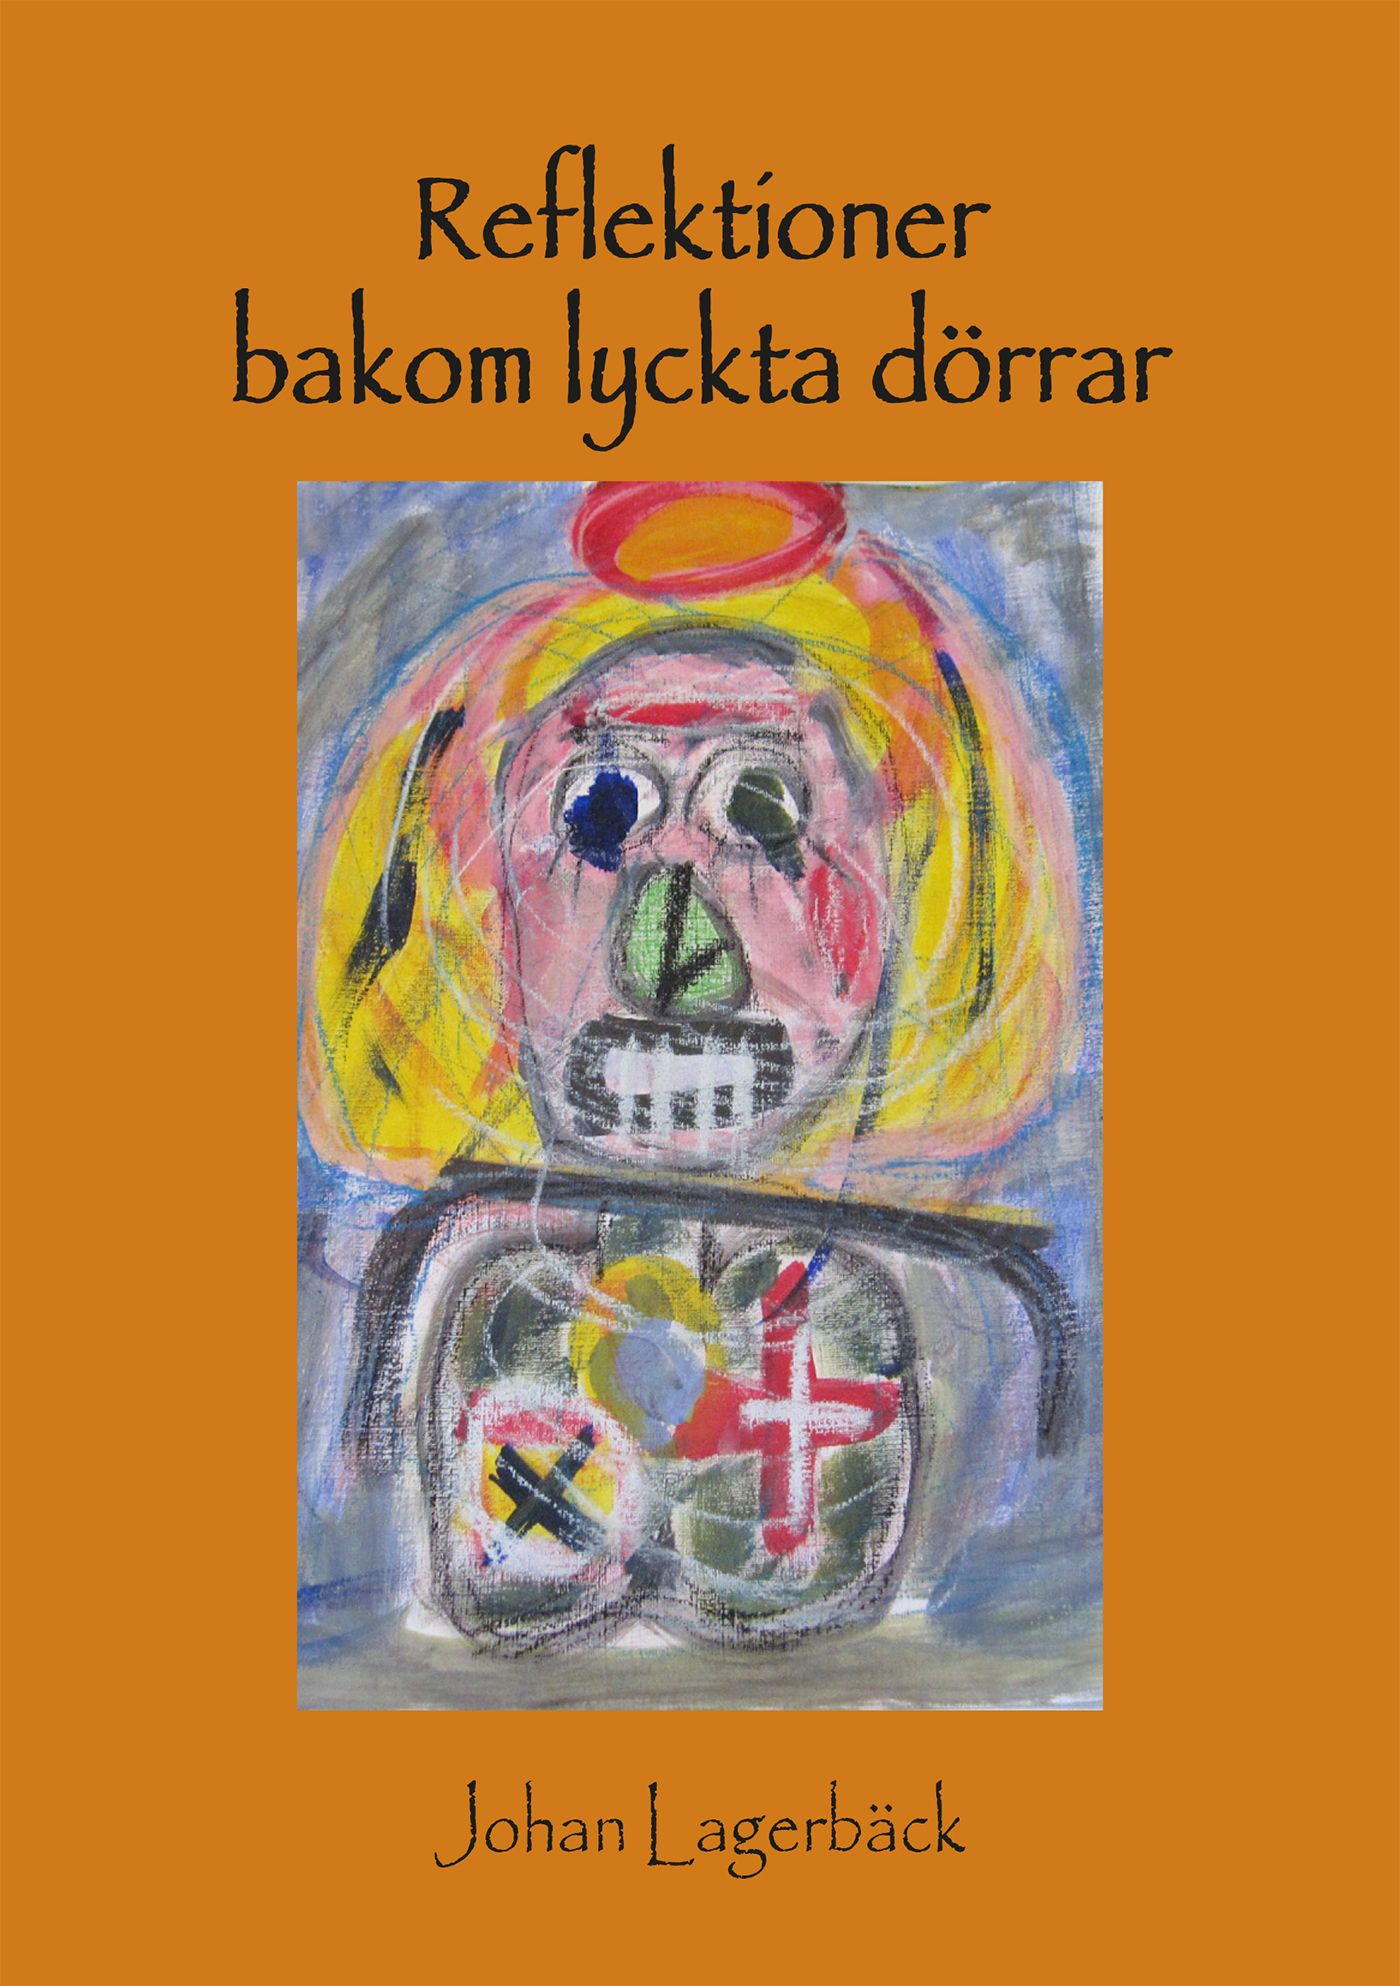 Reflektioner bakom lyckta dörrar, eBook by Johan Lagerbäck